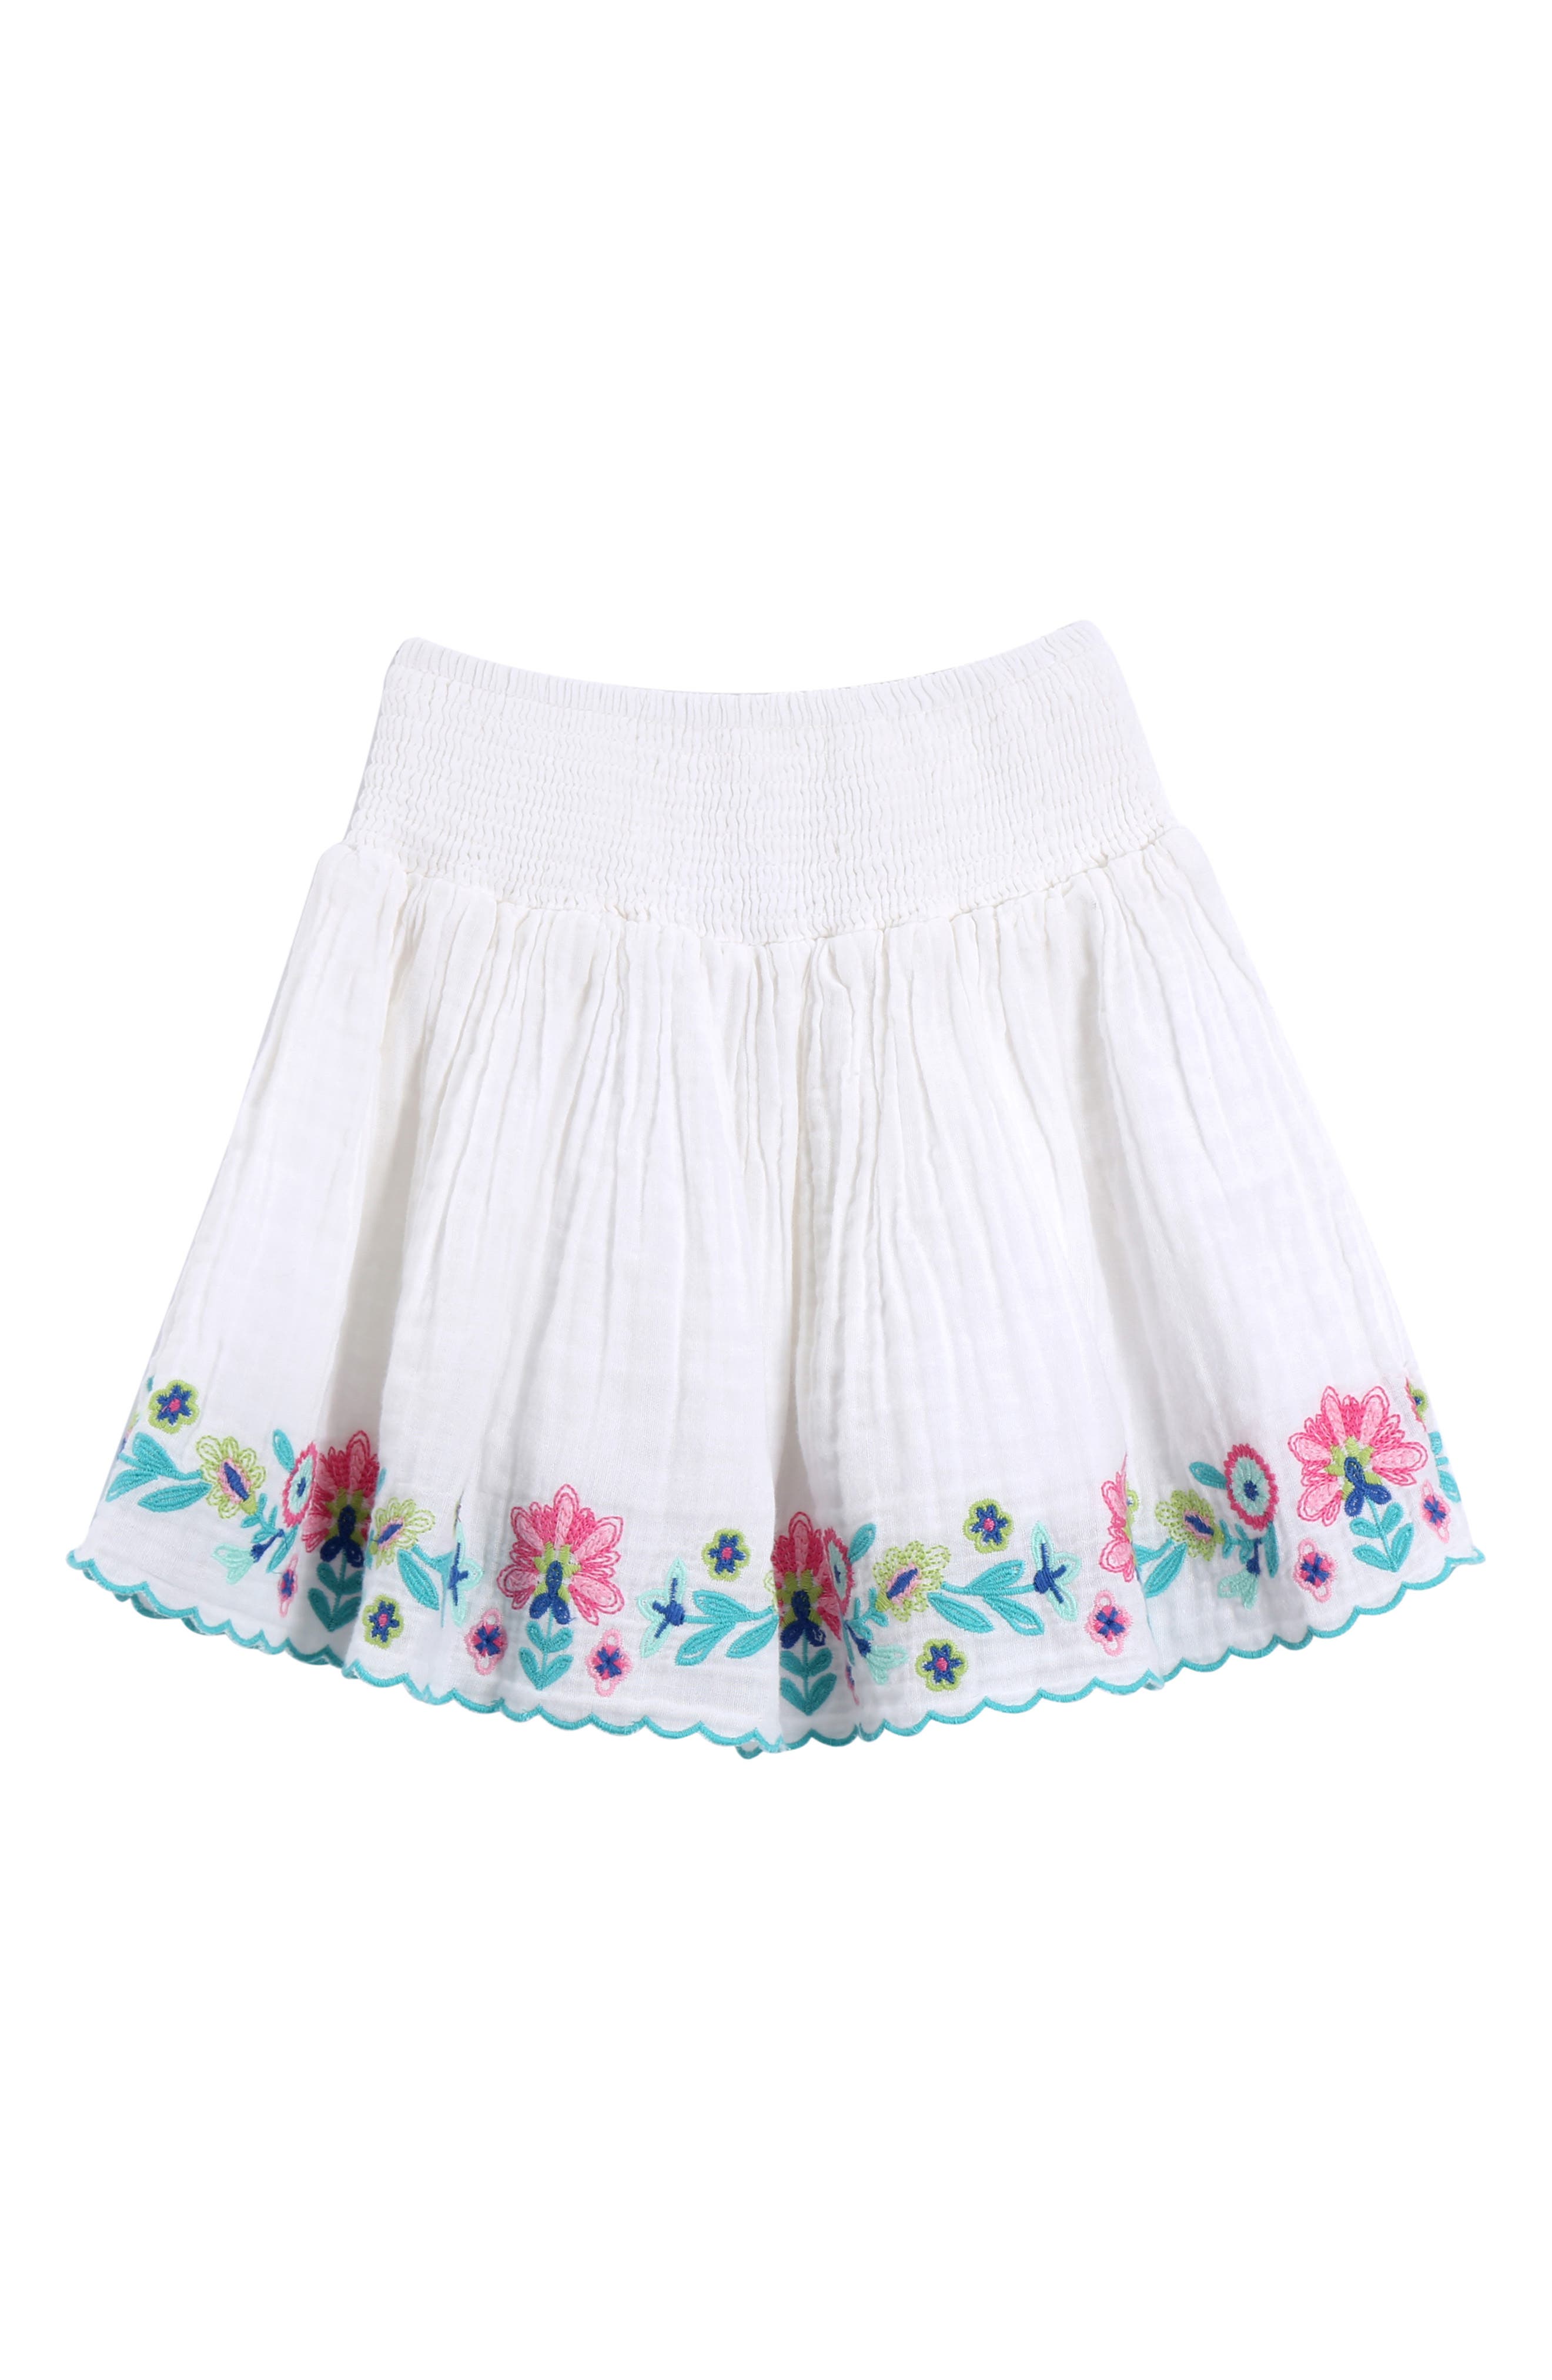 NWT Toddler Girls Blue White Print Skirt 2T 